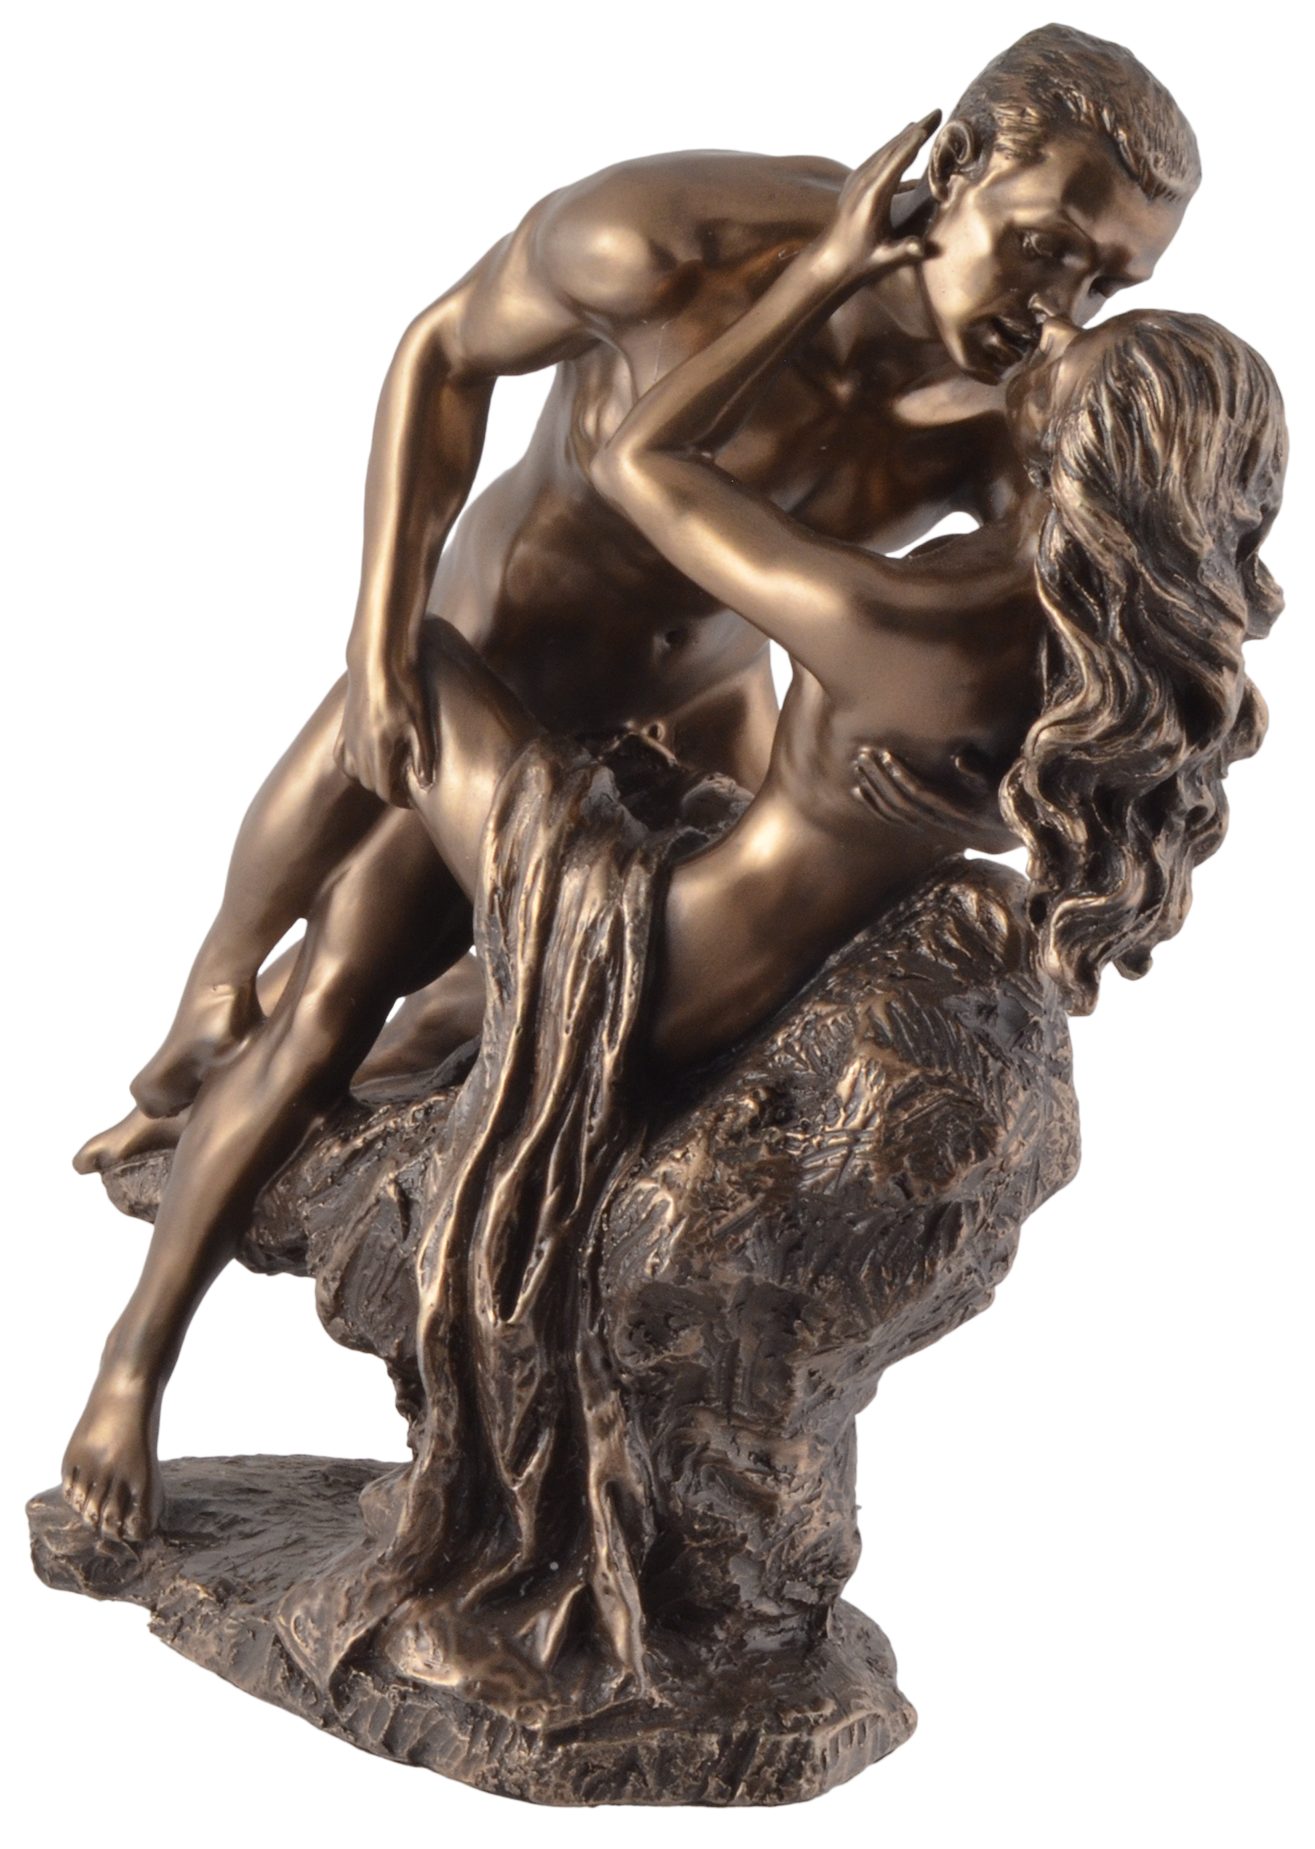 Liebenden "Love ca. Vogler Dekofigur Die Gmbh - Spring" direct bronziert, bronziert by von 21x10x22cm Hand Veronese, LxBxH in